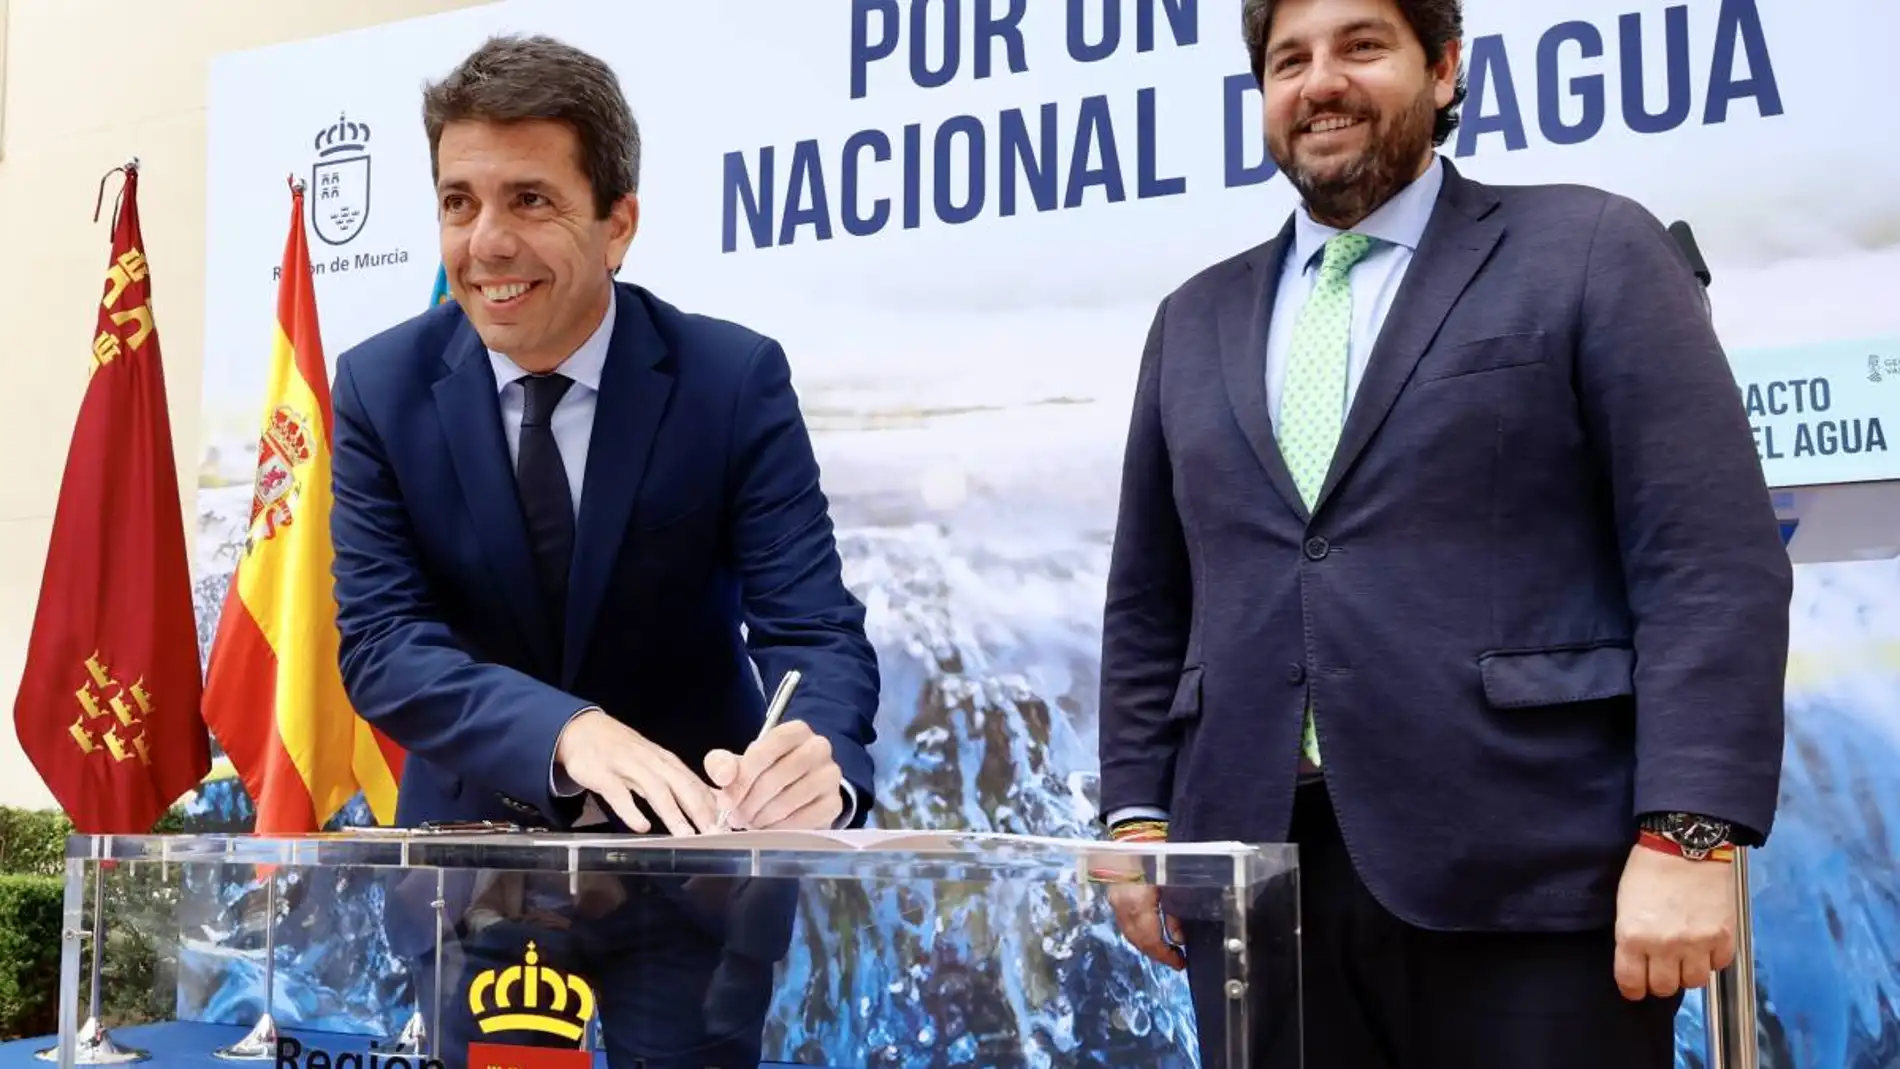 Pacto entre la Comunidad Valenciana y Murcia por un pacto Nacional del Agua